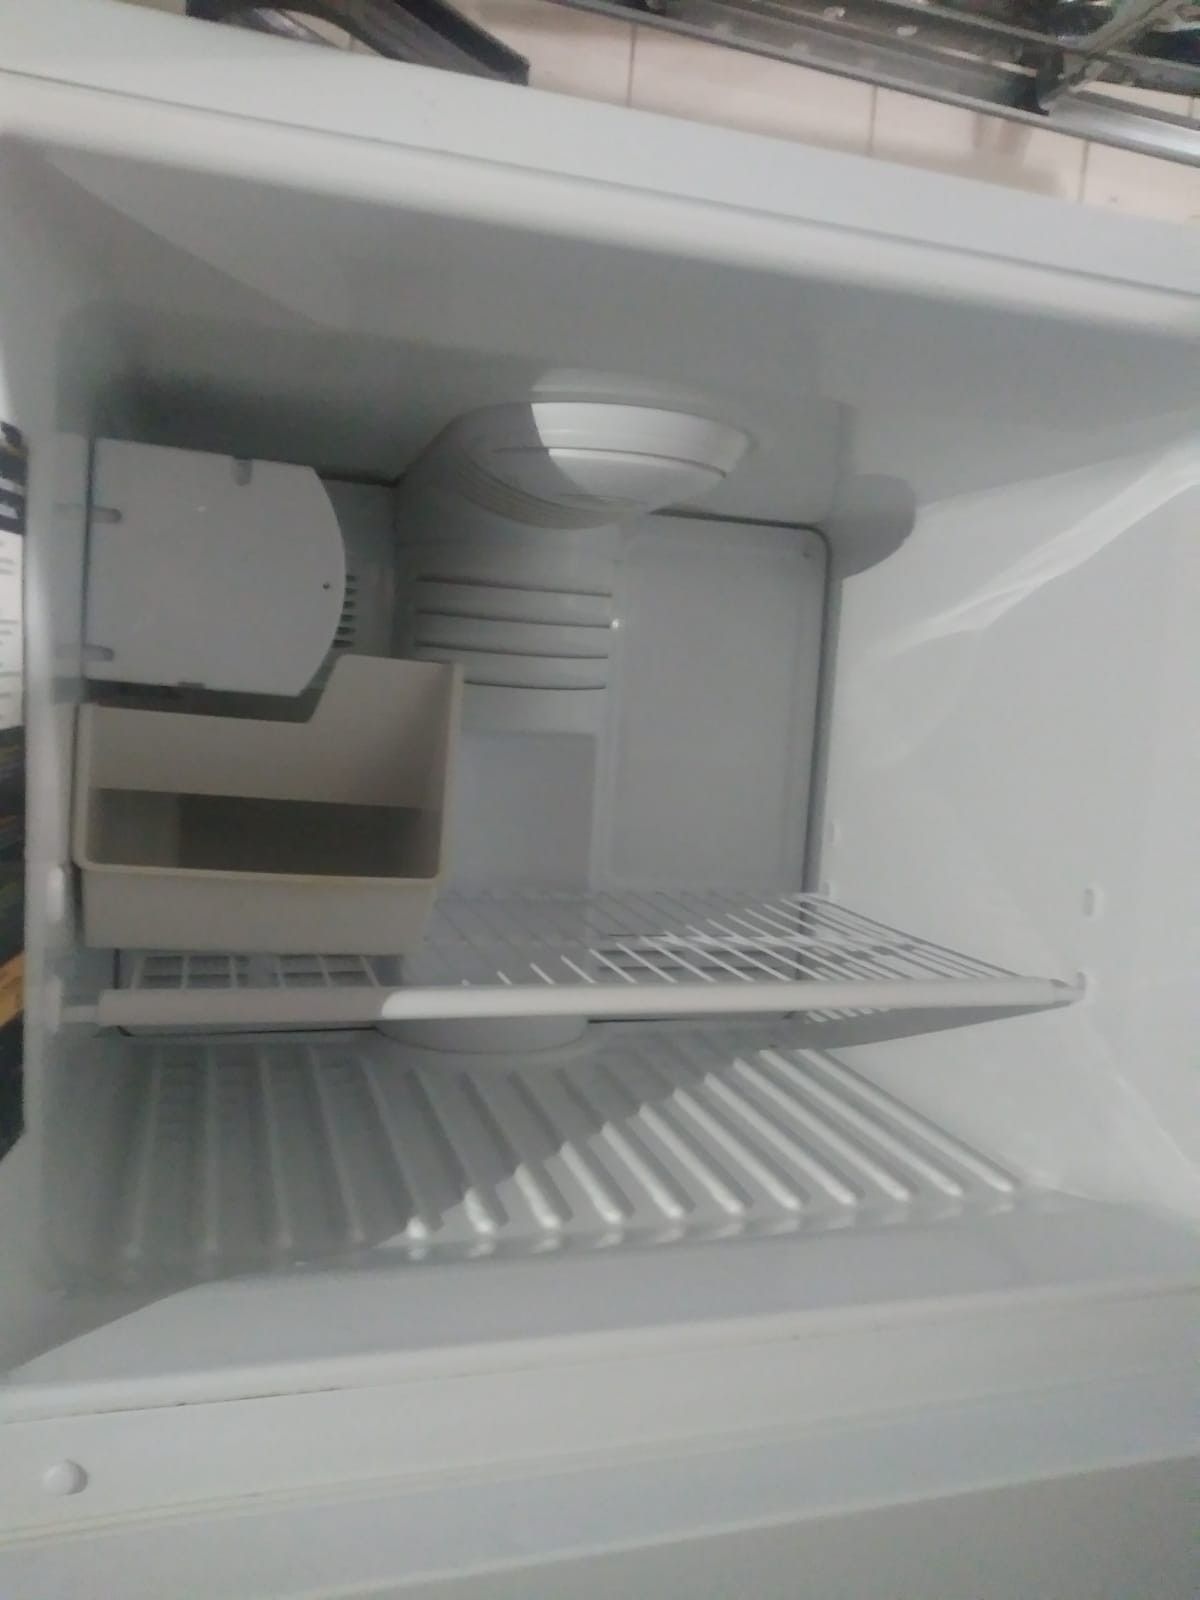 2 door refrigerator